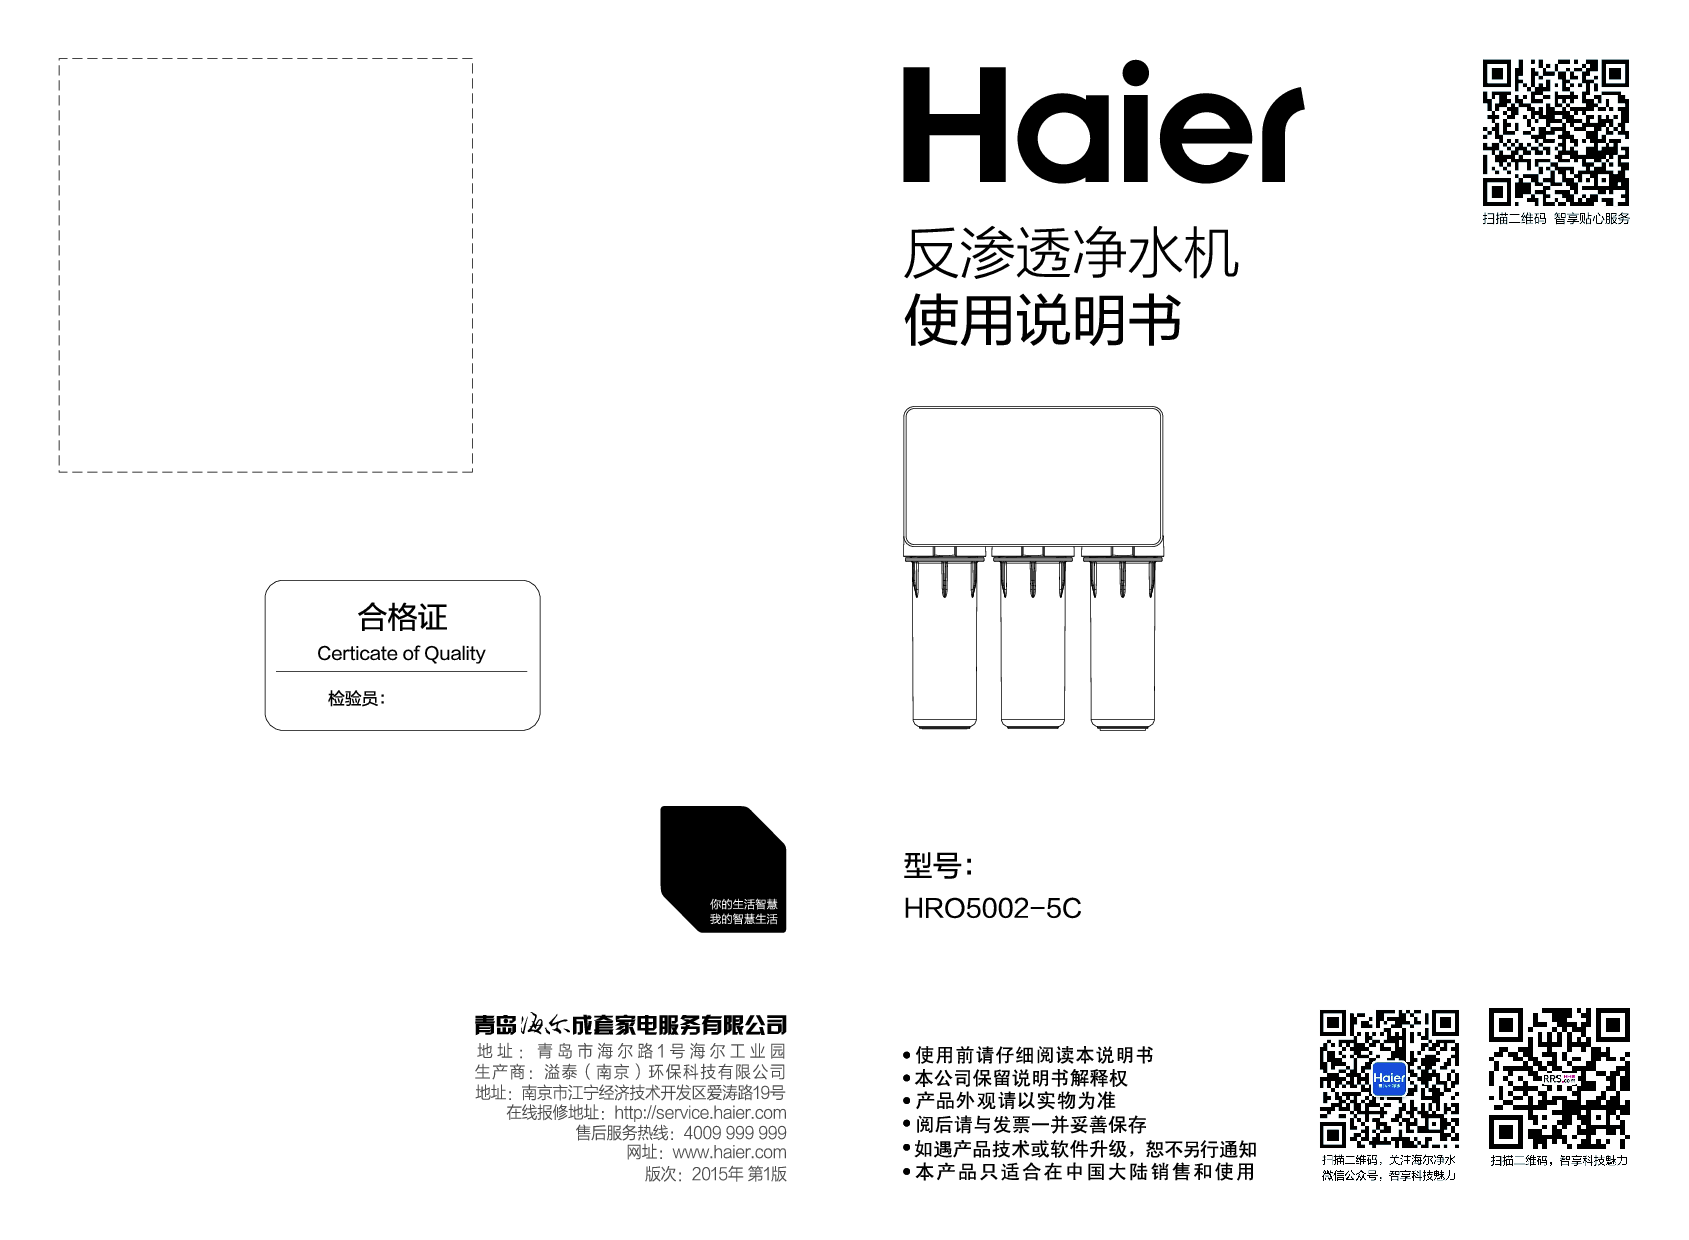 海尔 Haier HRO5002-5C 使用说明书 封面